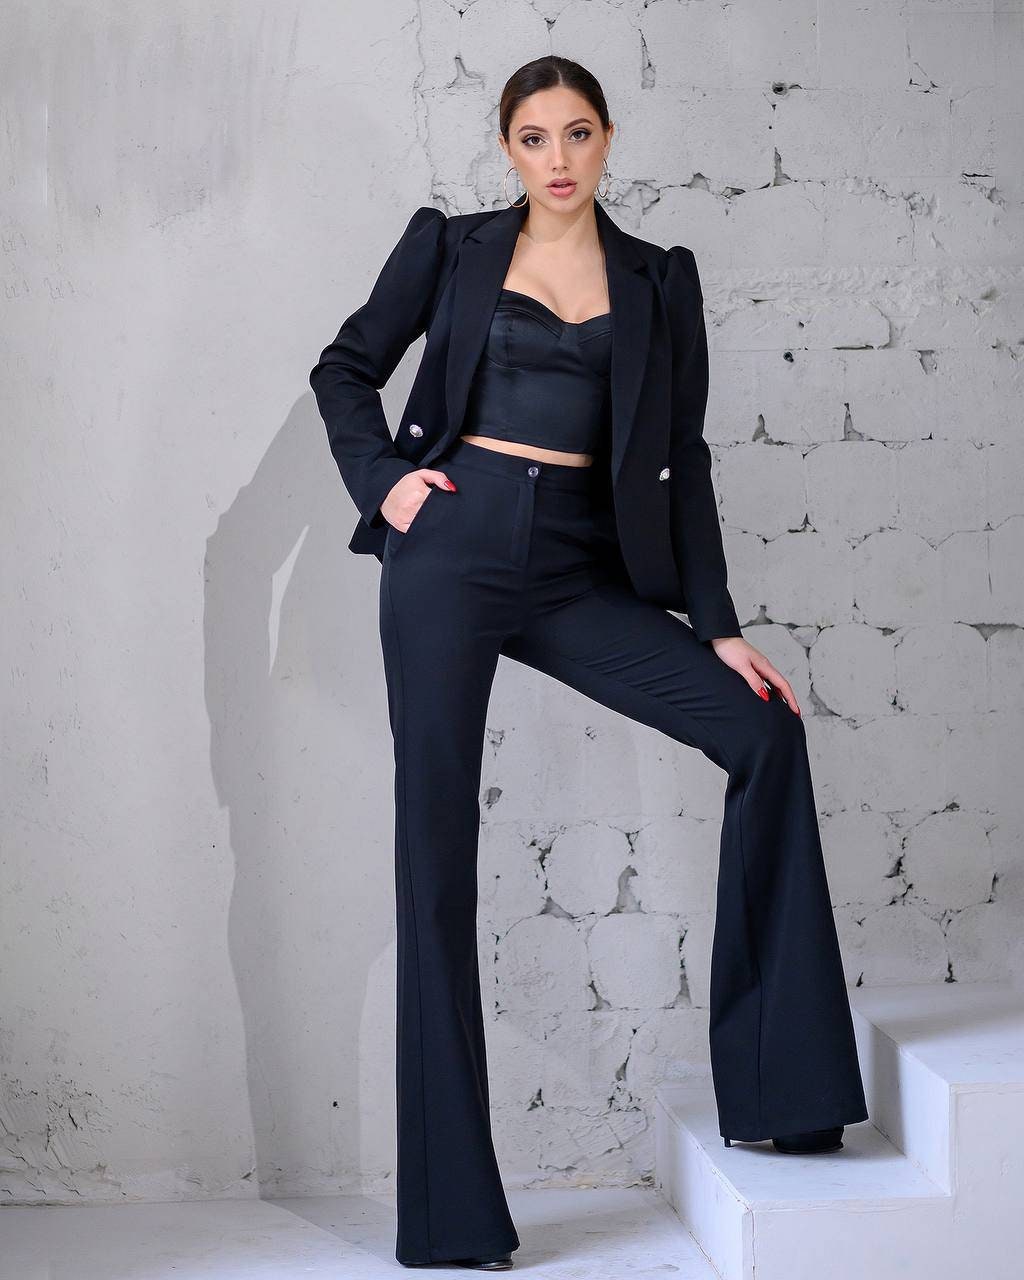 Black Flared Pants Suit Set With Blazer, Black Classic Women's Suit Set,  Black Blazer Trouser Suit for Women -  Norway